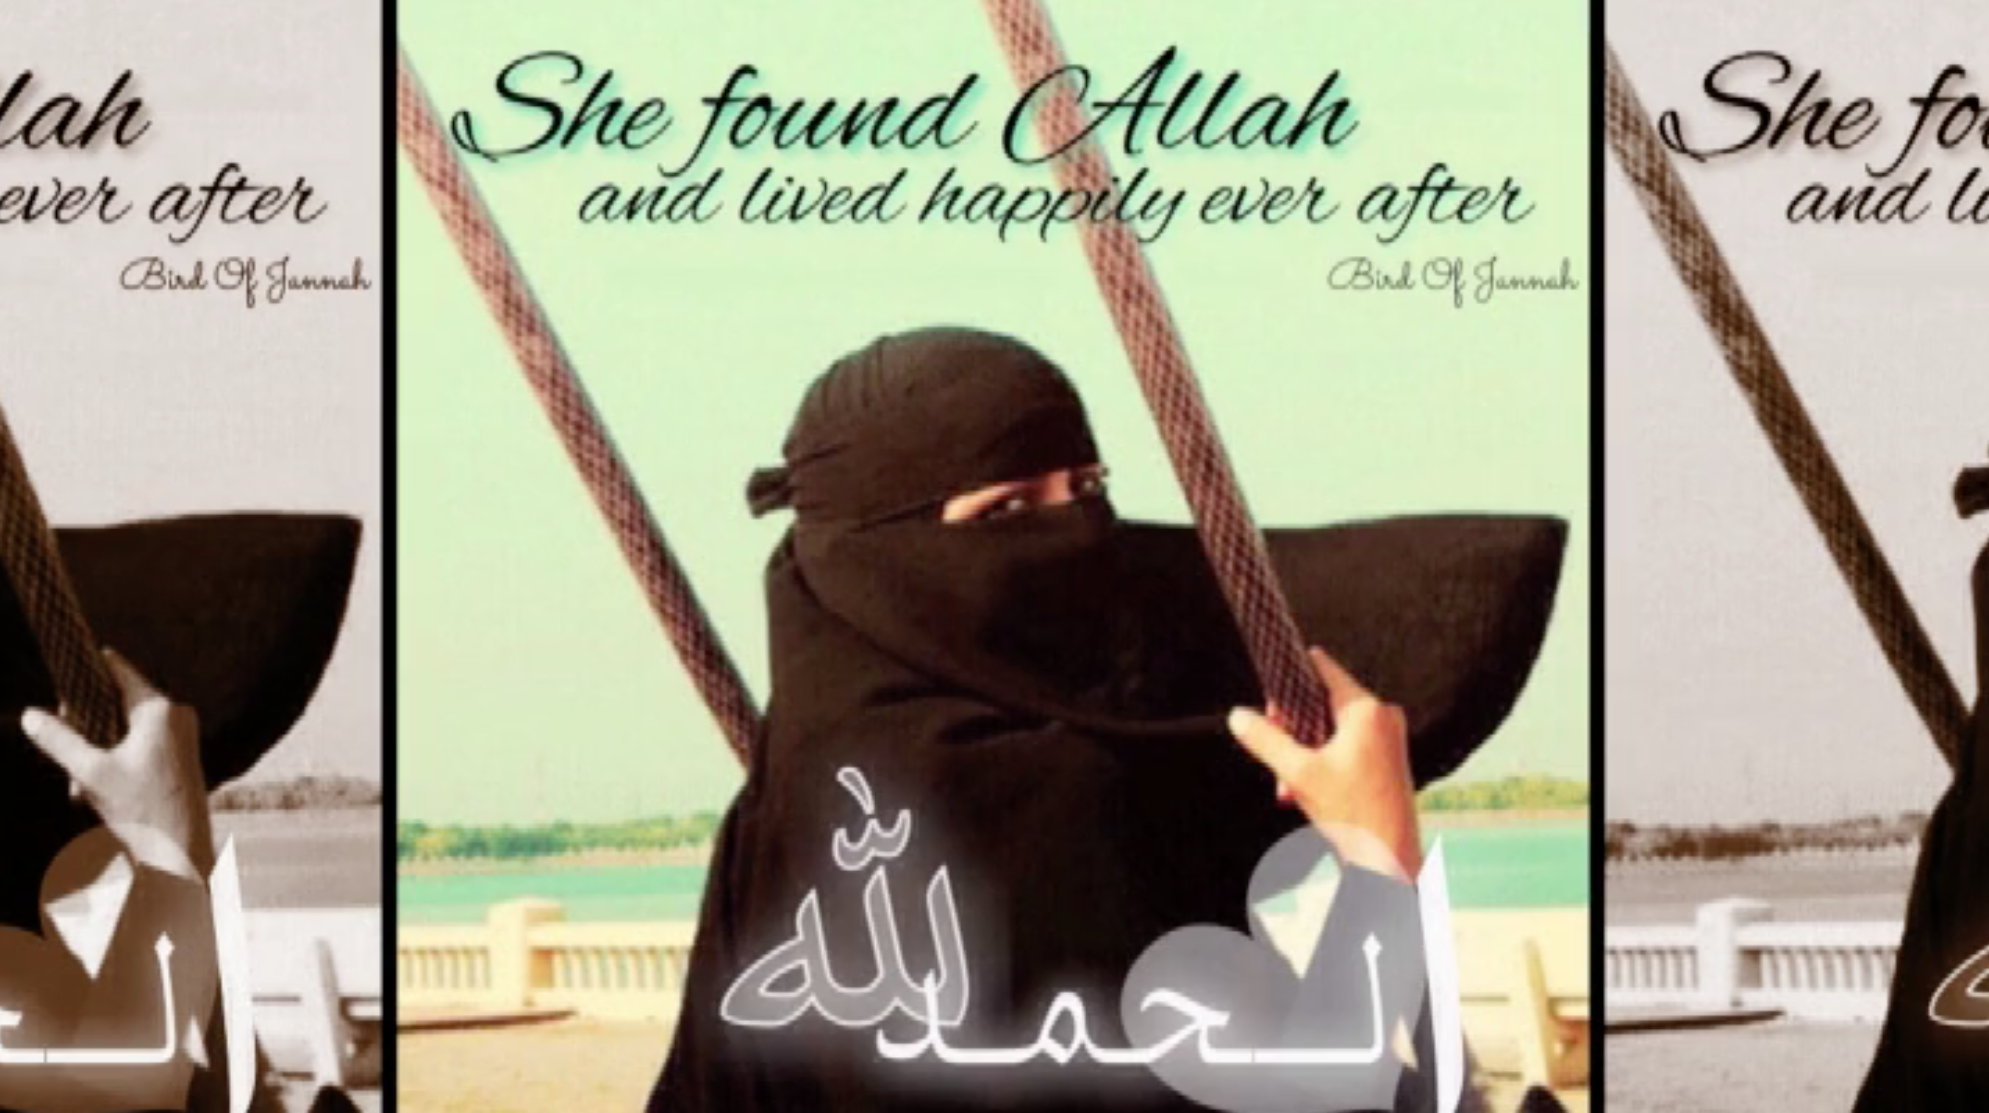 عصفورة الجنة  تجند النساء لخدمة داعش عبر مدونة رومانسية!! - CNNArabic.com